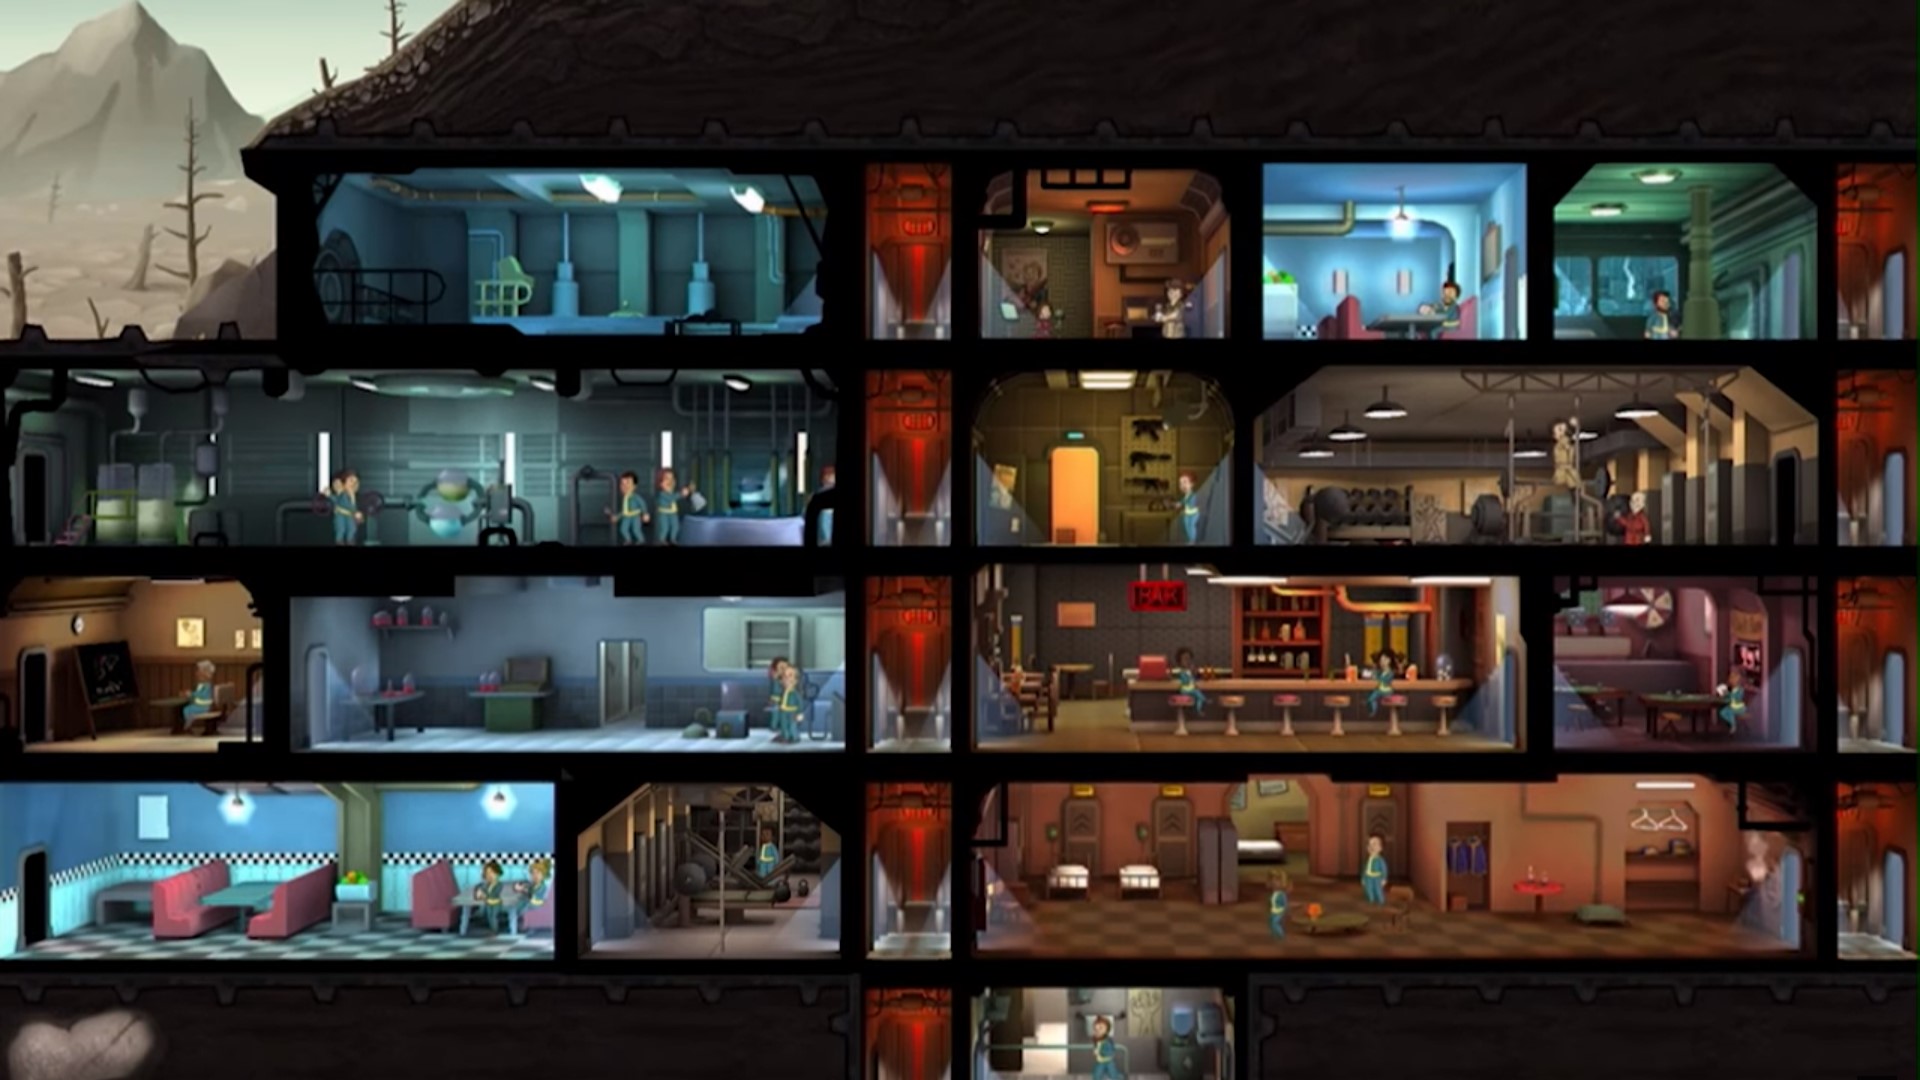 Trò chơi chiến lược di động tốt nhất: Nơi trú ẩn Fallout. Hình ảnh cho thấy một nơi trú ẩn bụi phóng xạ với nhiều phòng và người bên trong nó